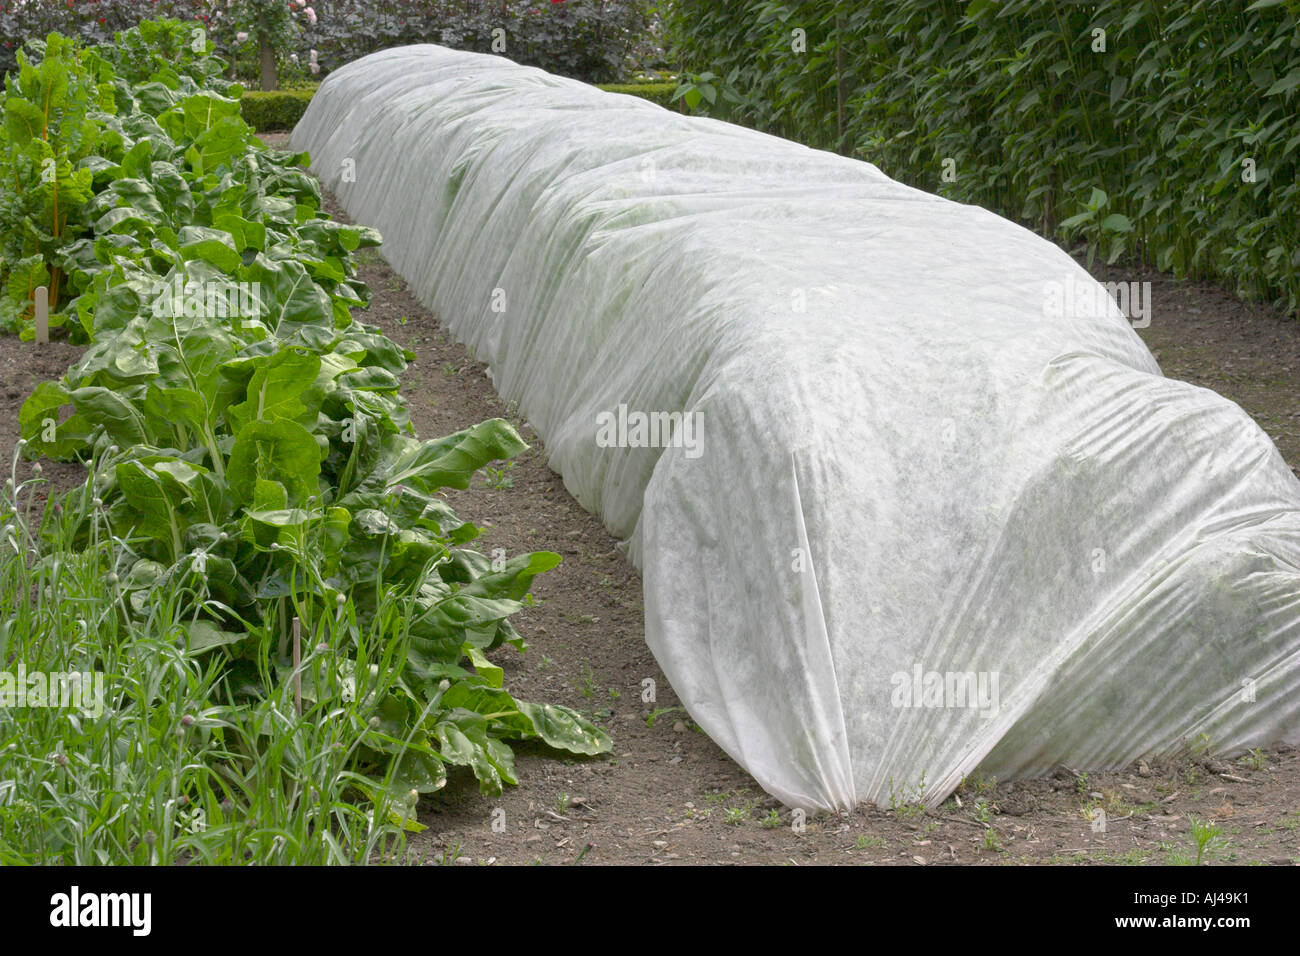 Protective polypropylene fleece material over vegetables in garden Stock  Photo - Alamy